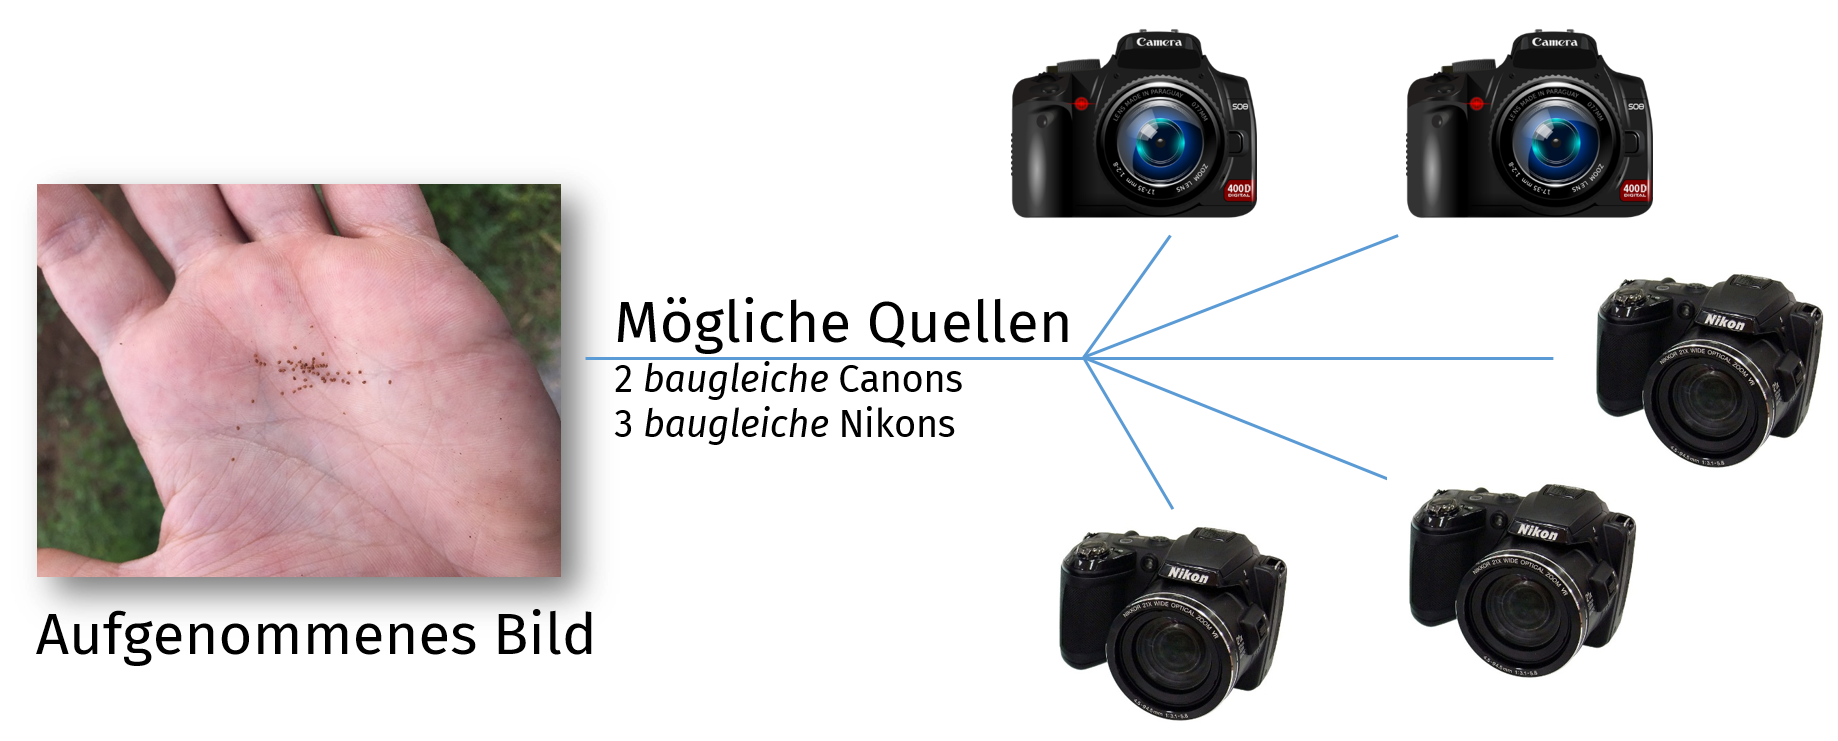 Photo-Response Non-Uniformity: Mithilfe des Kamerafingerabdrucks kann man eindeutig das Aufnahmegerät eines Bildes identifizieren.